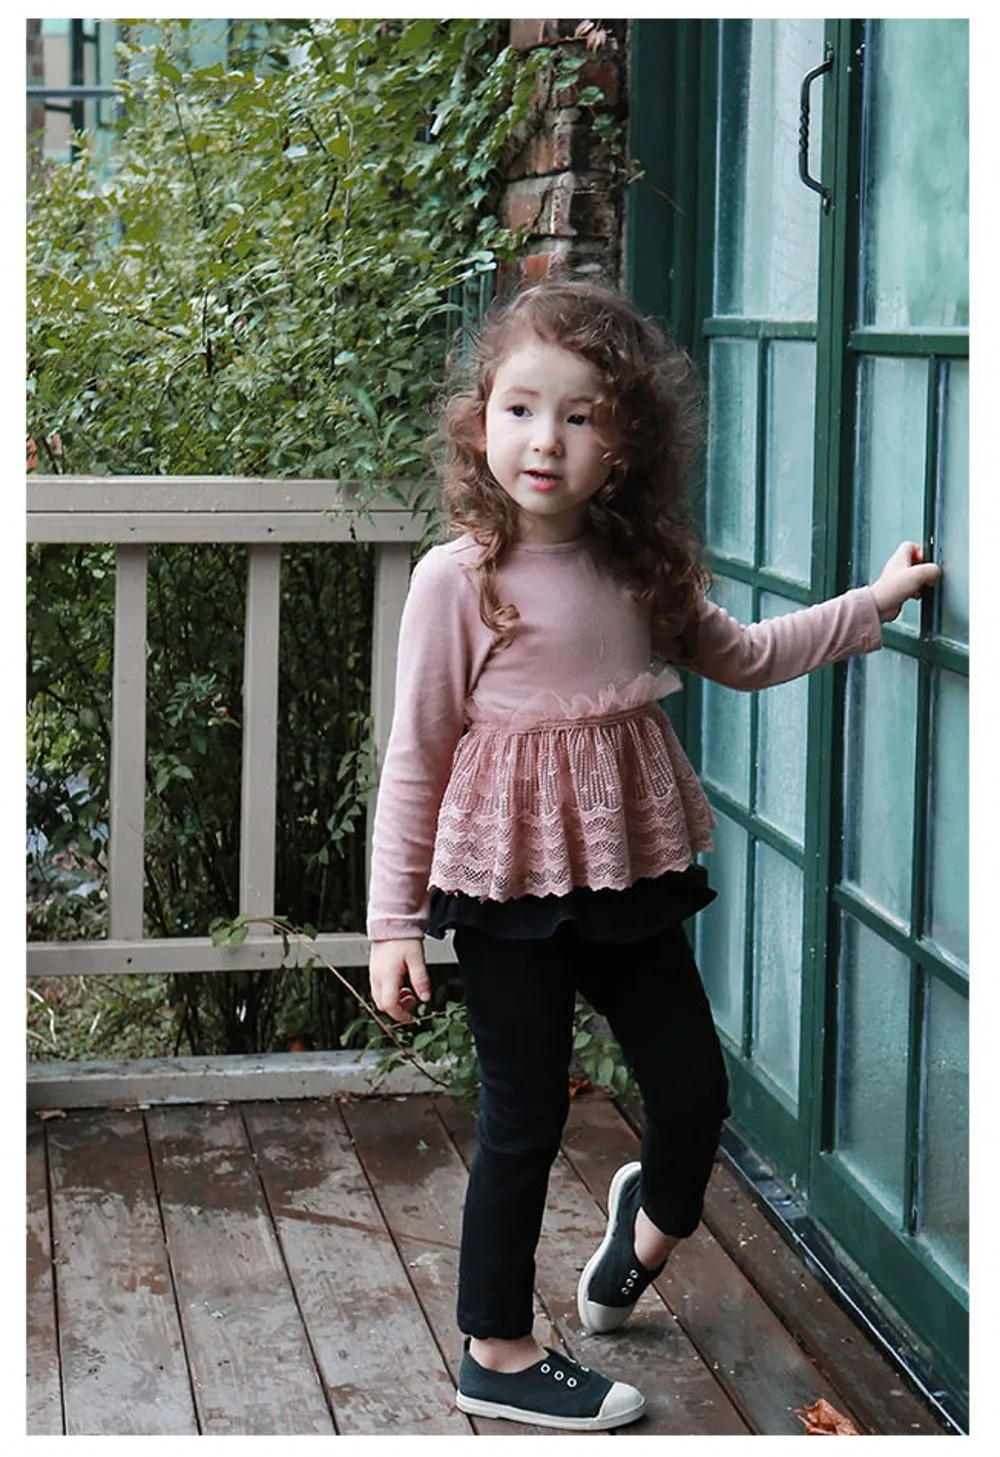 Детские штаны на осень и зиму, г., Детская милая маленькая юбка в иностранном стиле для девочек и обтягивающие джинсы